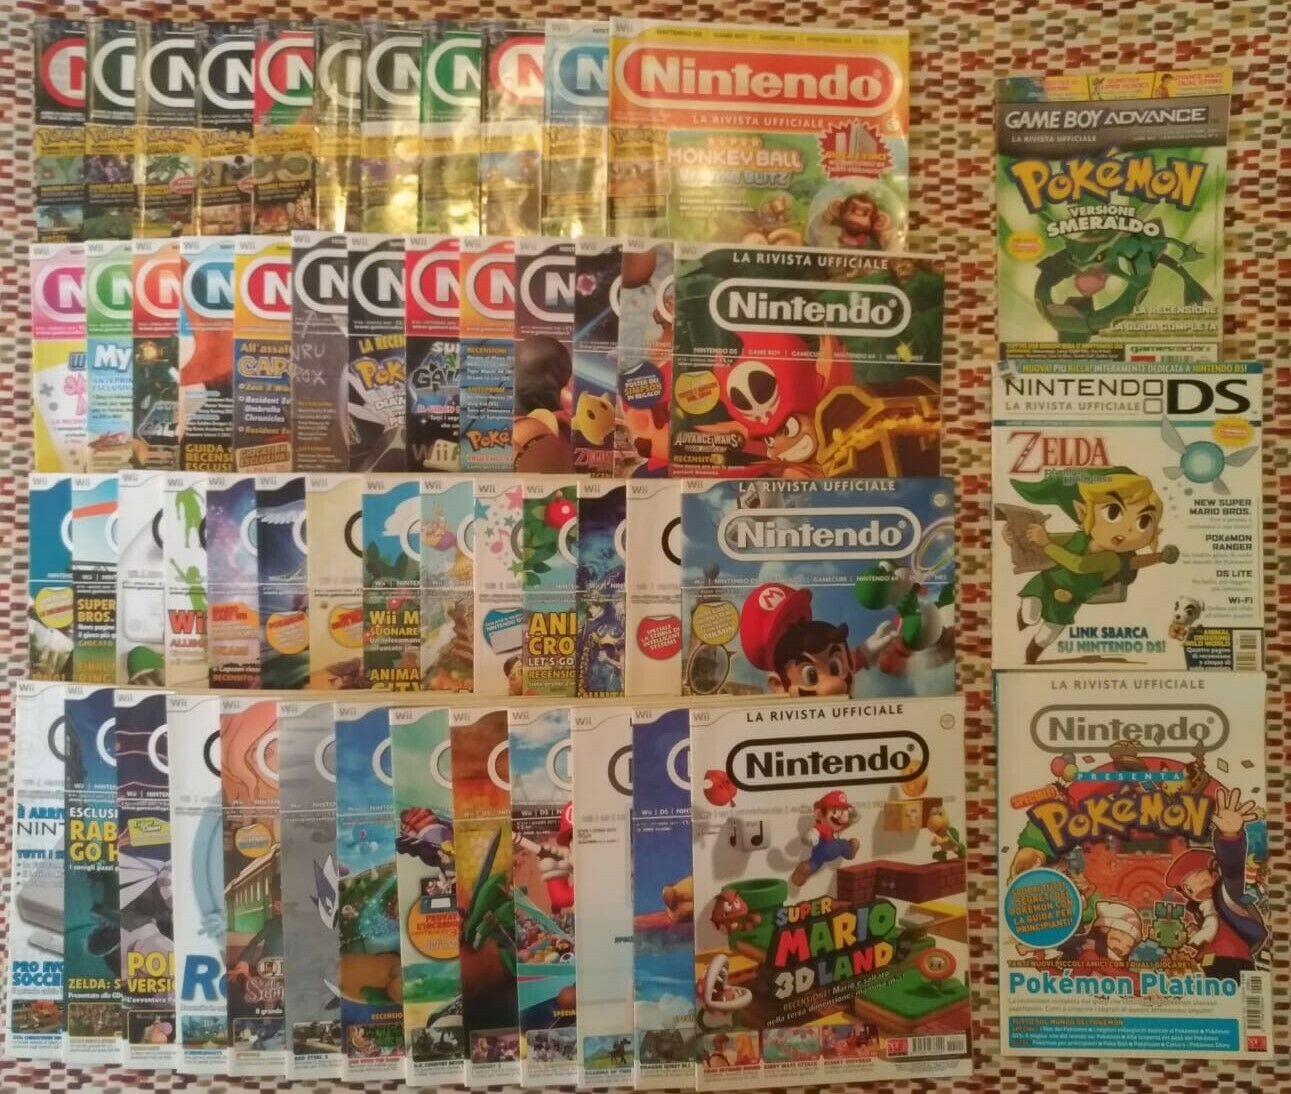 Nintendo La Rivista Ufficiale: ricordando i videogiochi su carta stampata